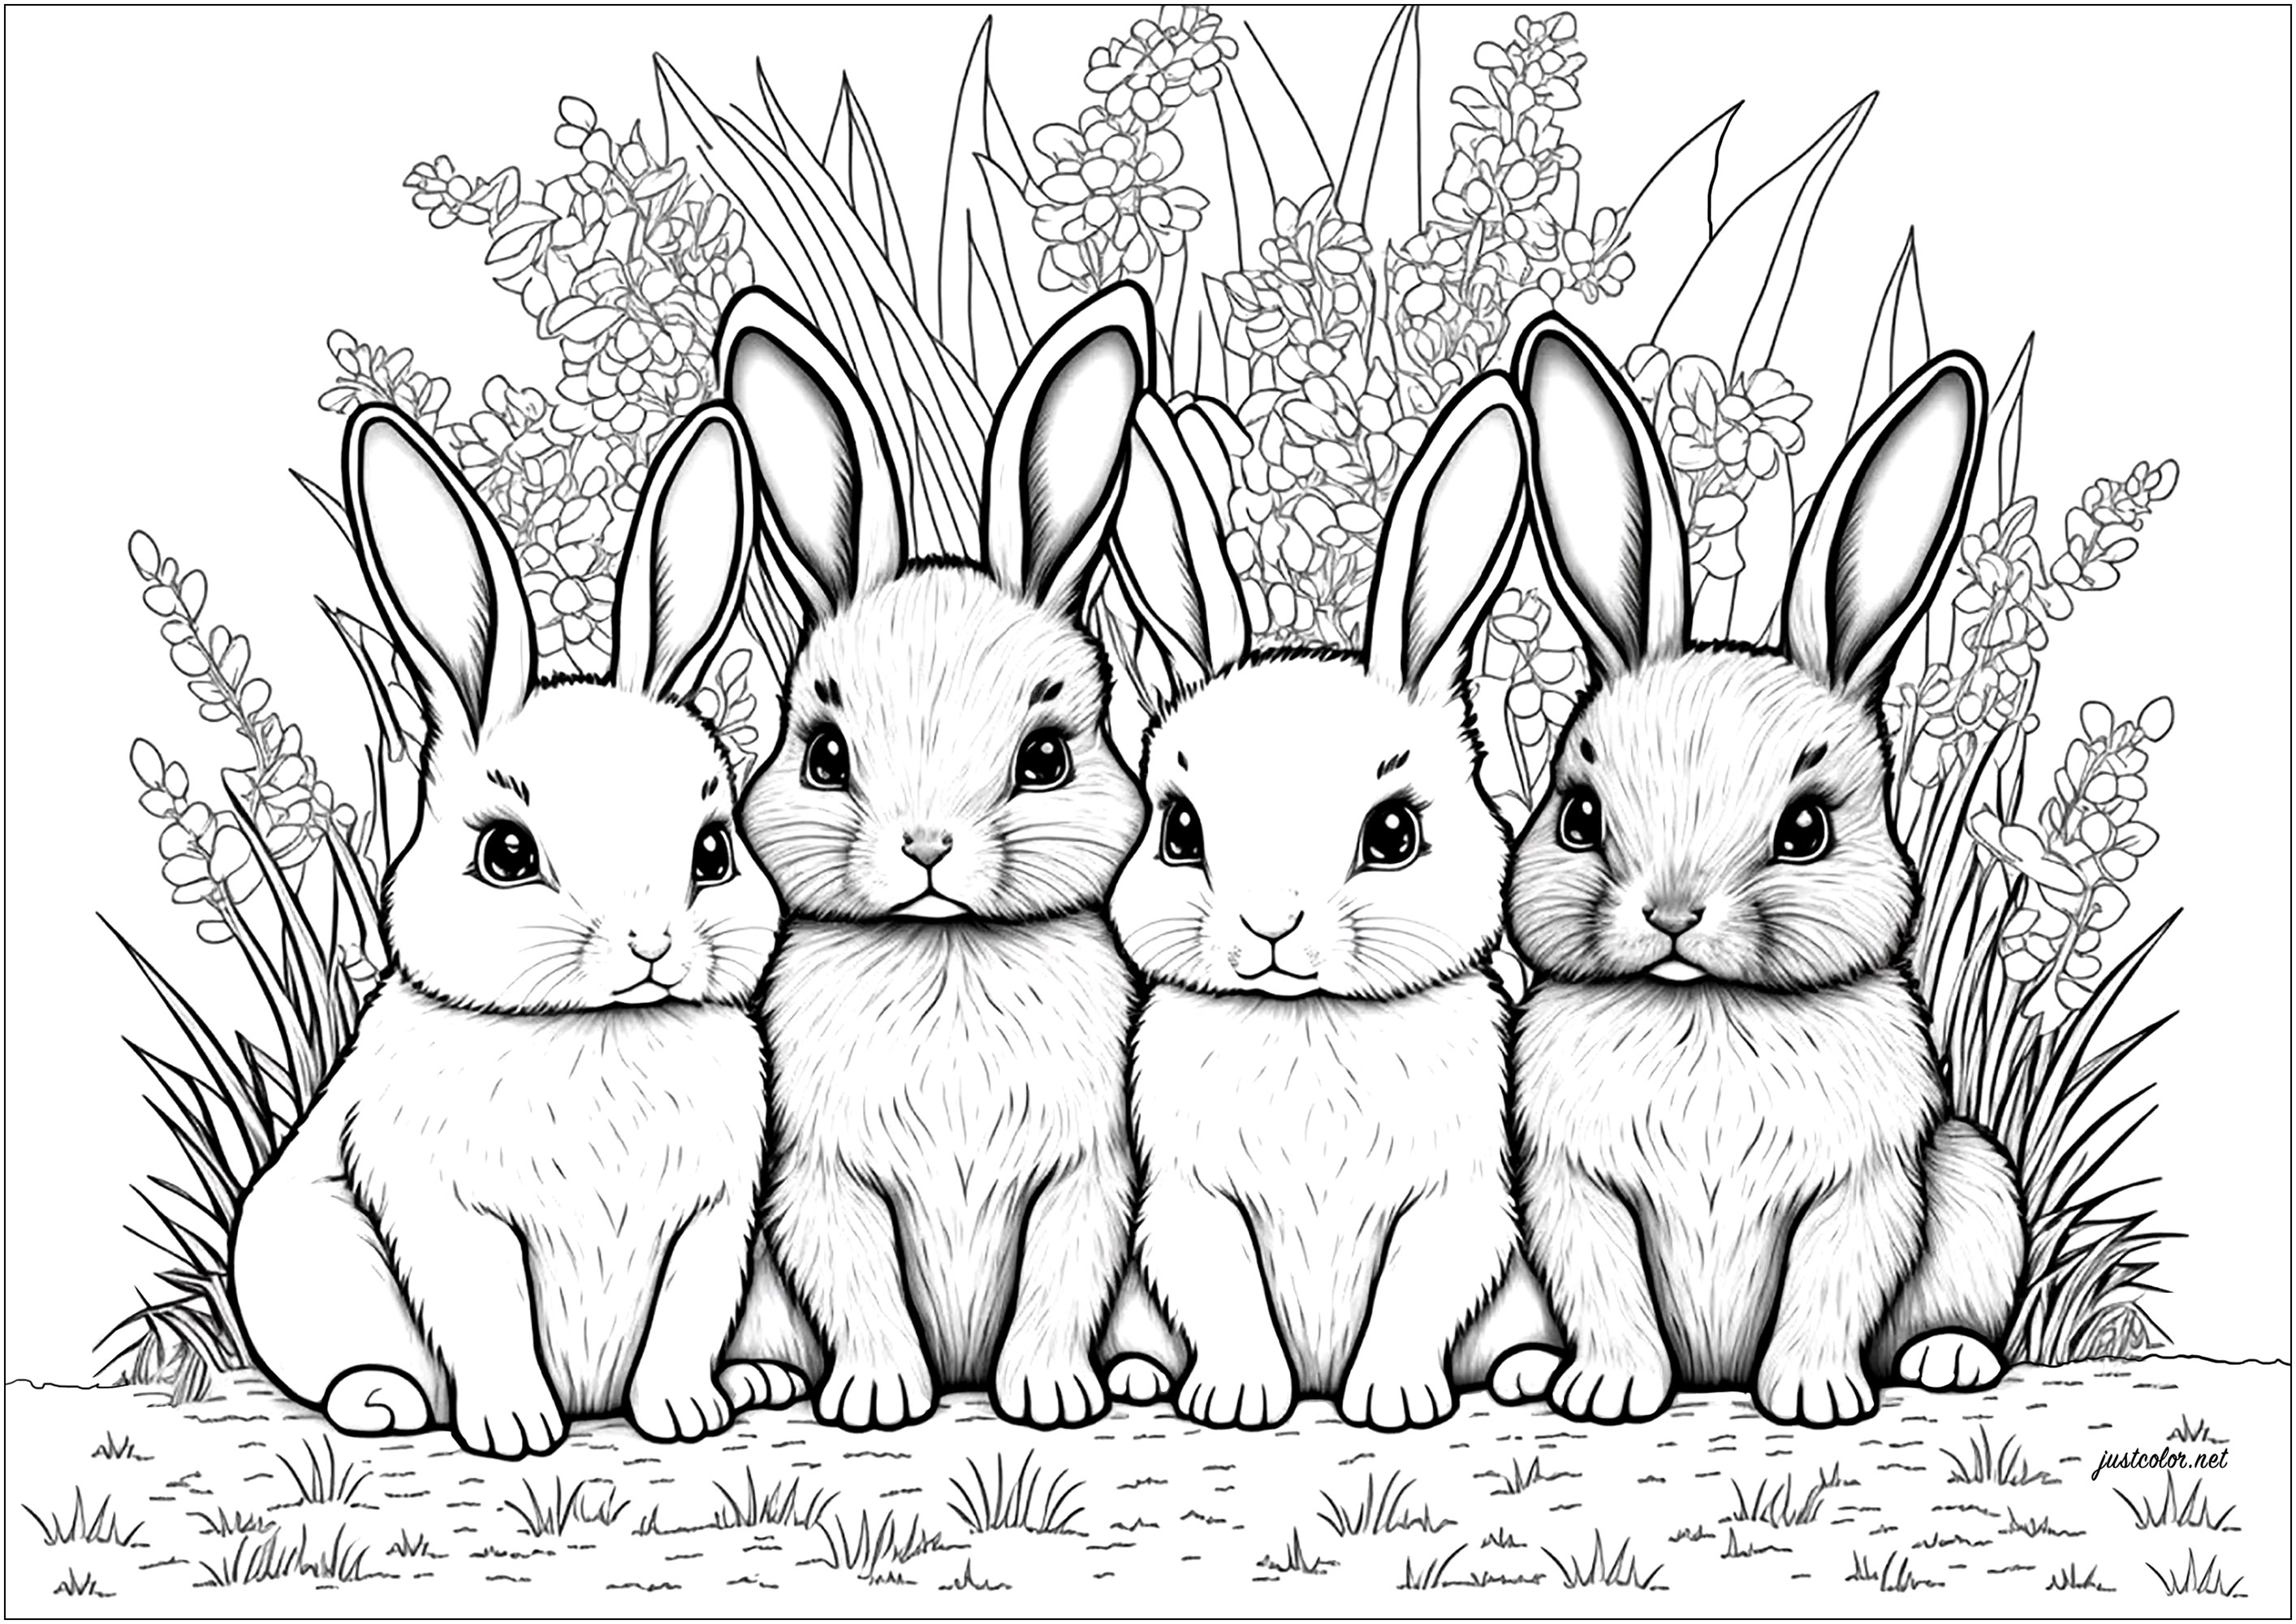 Quattro simpatici coniglietti da colorare, con uno sfondo di foglie. Questa pagina da colorare è carinissima! Quattro coniglietti, uno più adorabile dell'altro, vi aspettano, pronti per essere colorati. Sono tutti seduti sulle zampe posteriori, con lunghe orecchie e grandi occhi, e sono circondati da uno sfondo di foglie.